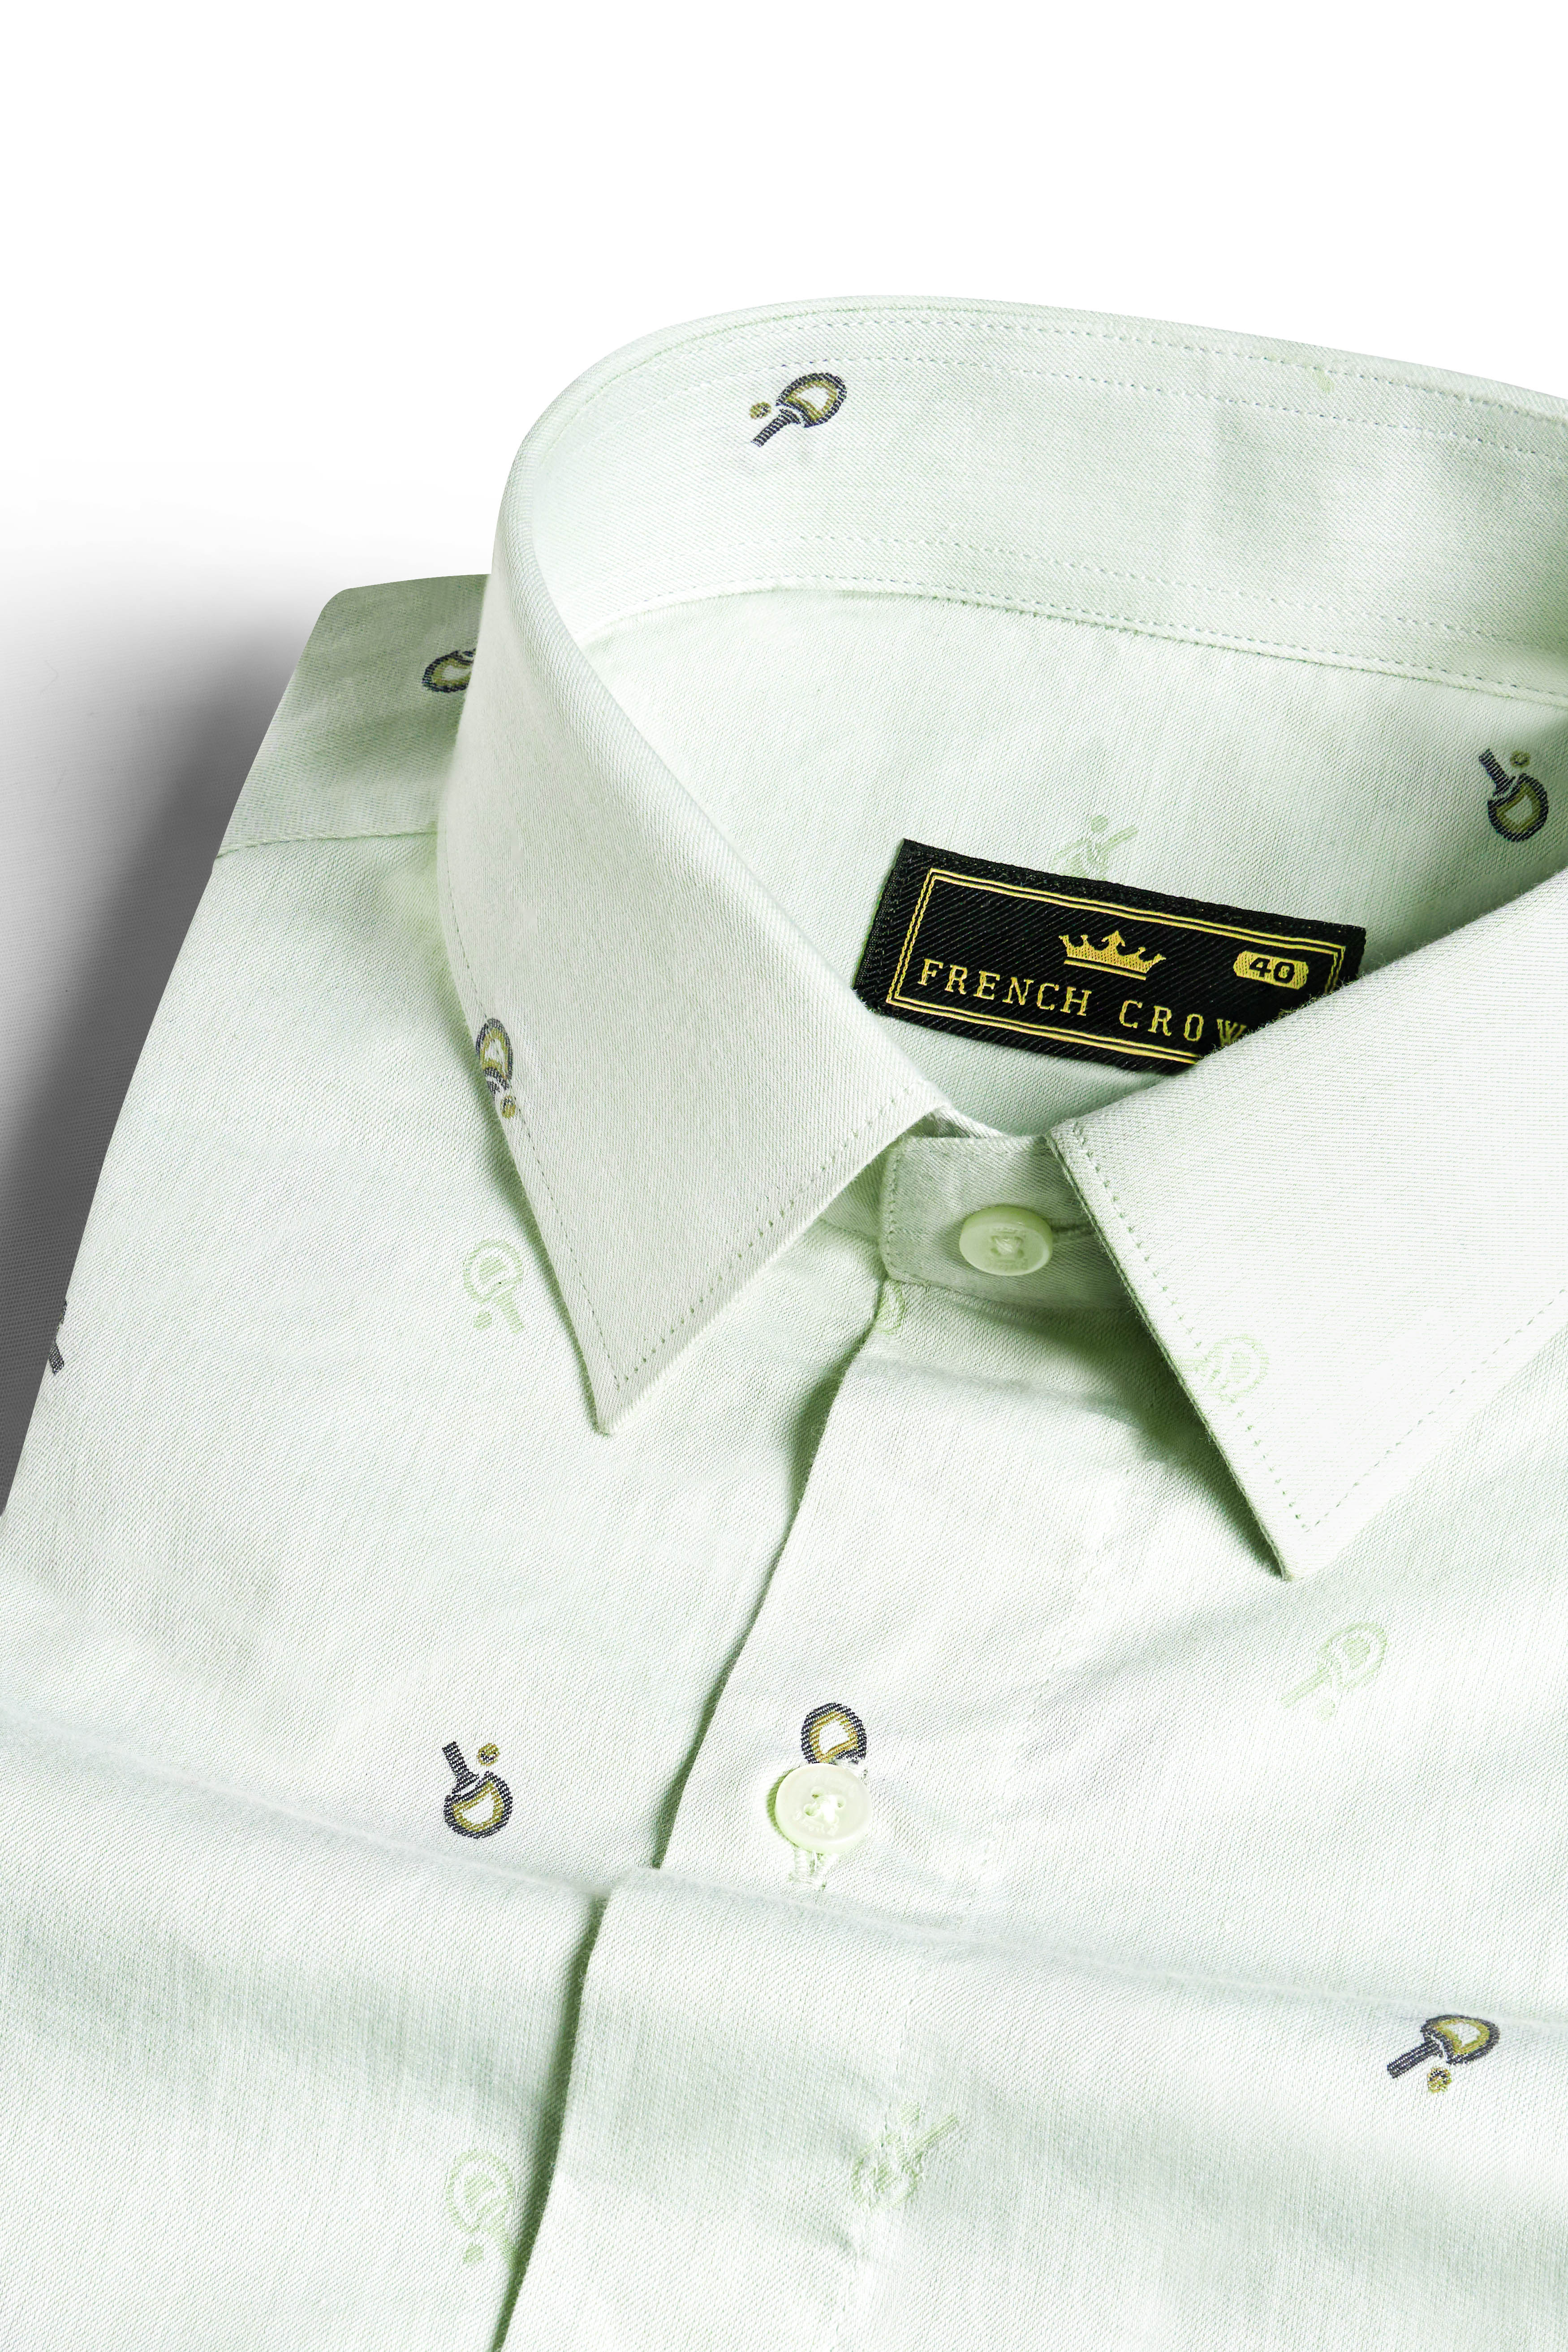 Eggshell Green Jacquard Textured Premium Giza Cotton Shirt